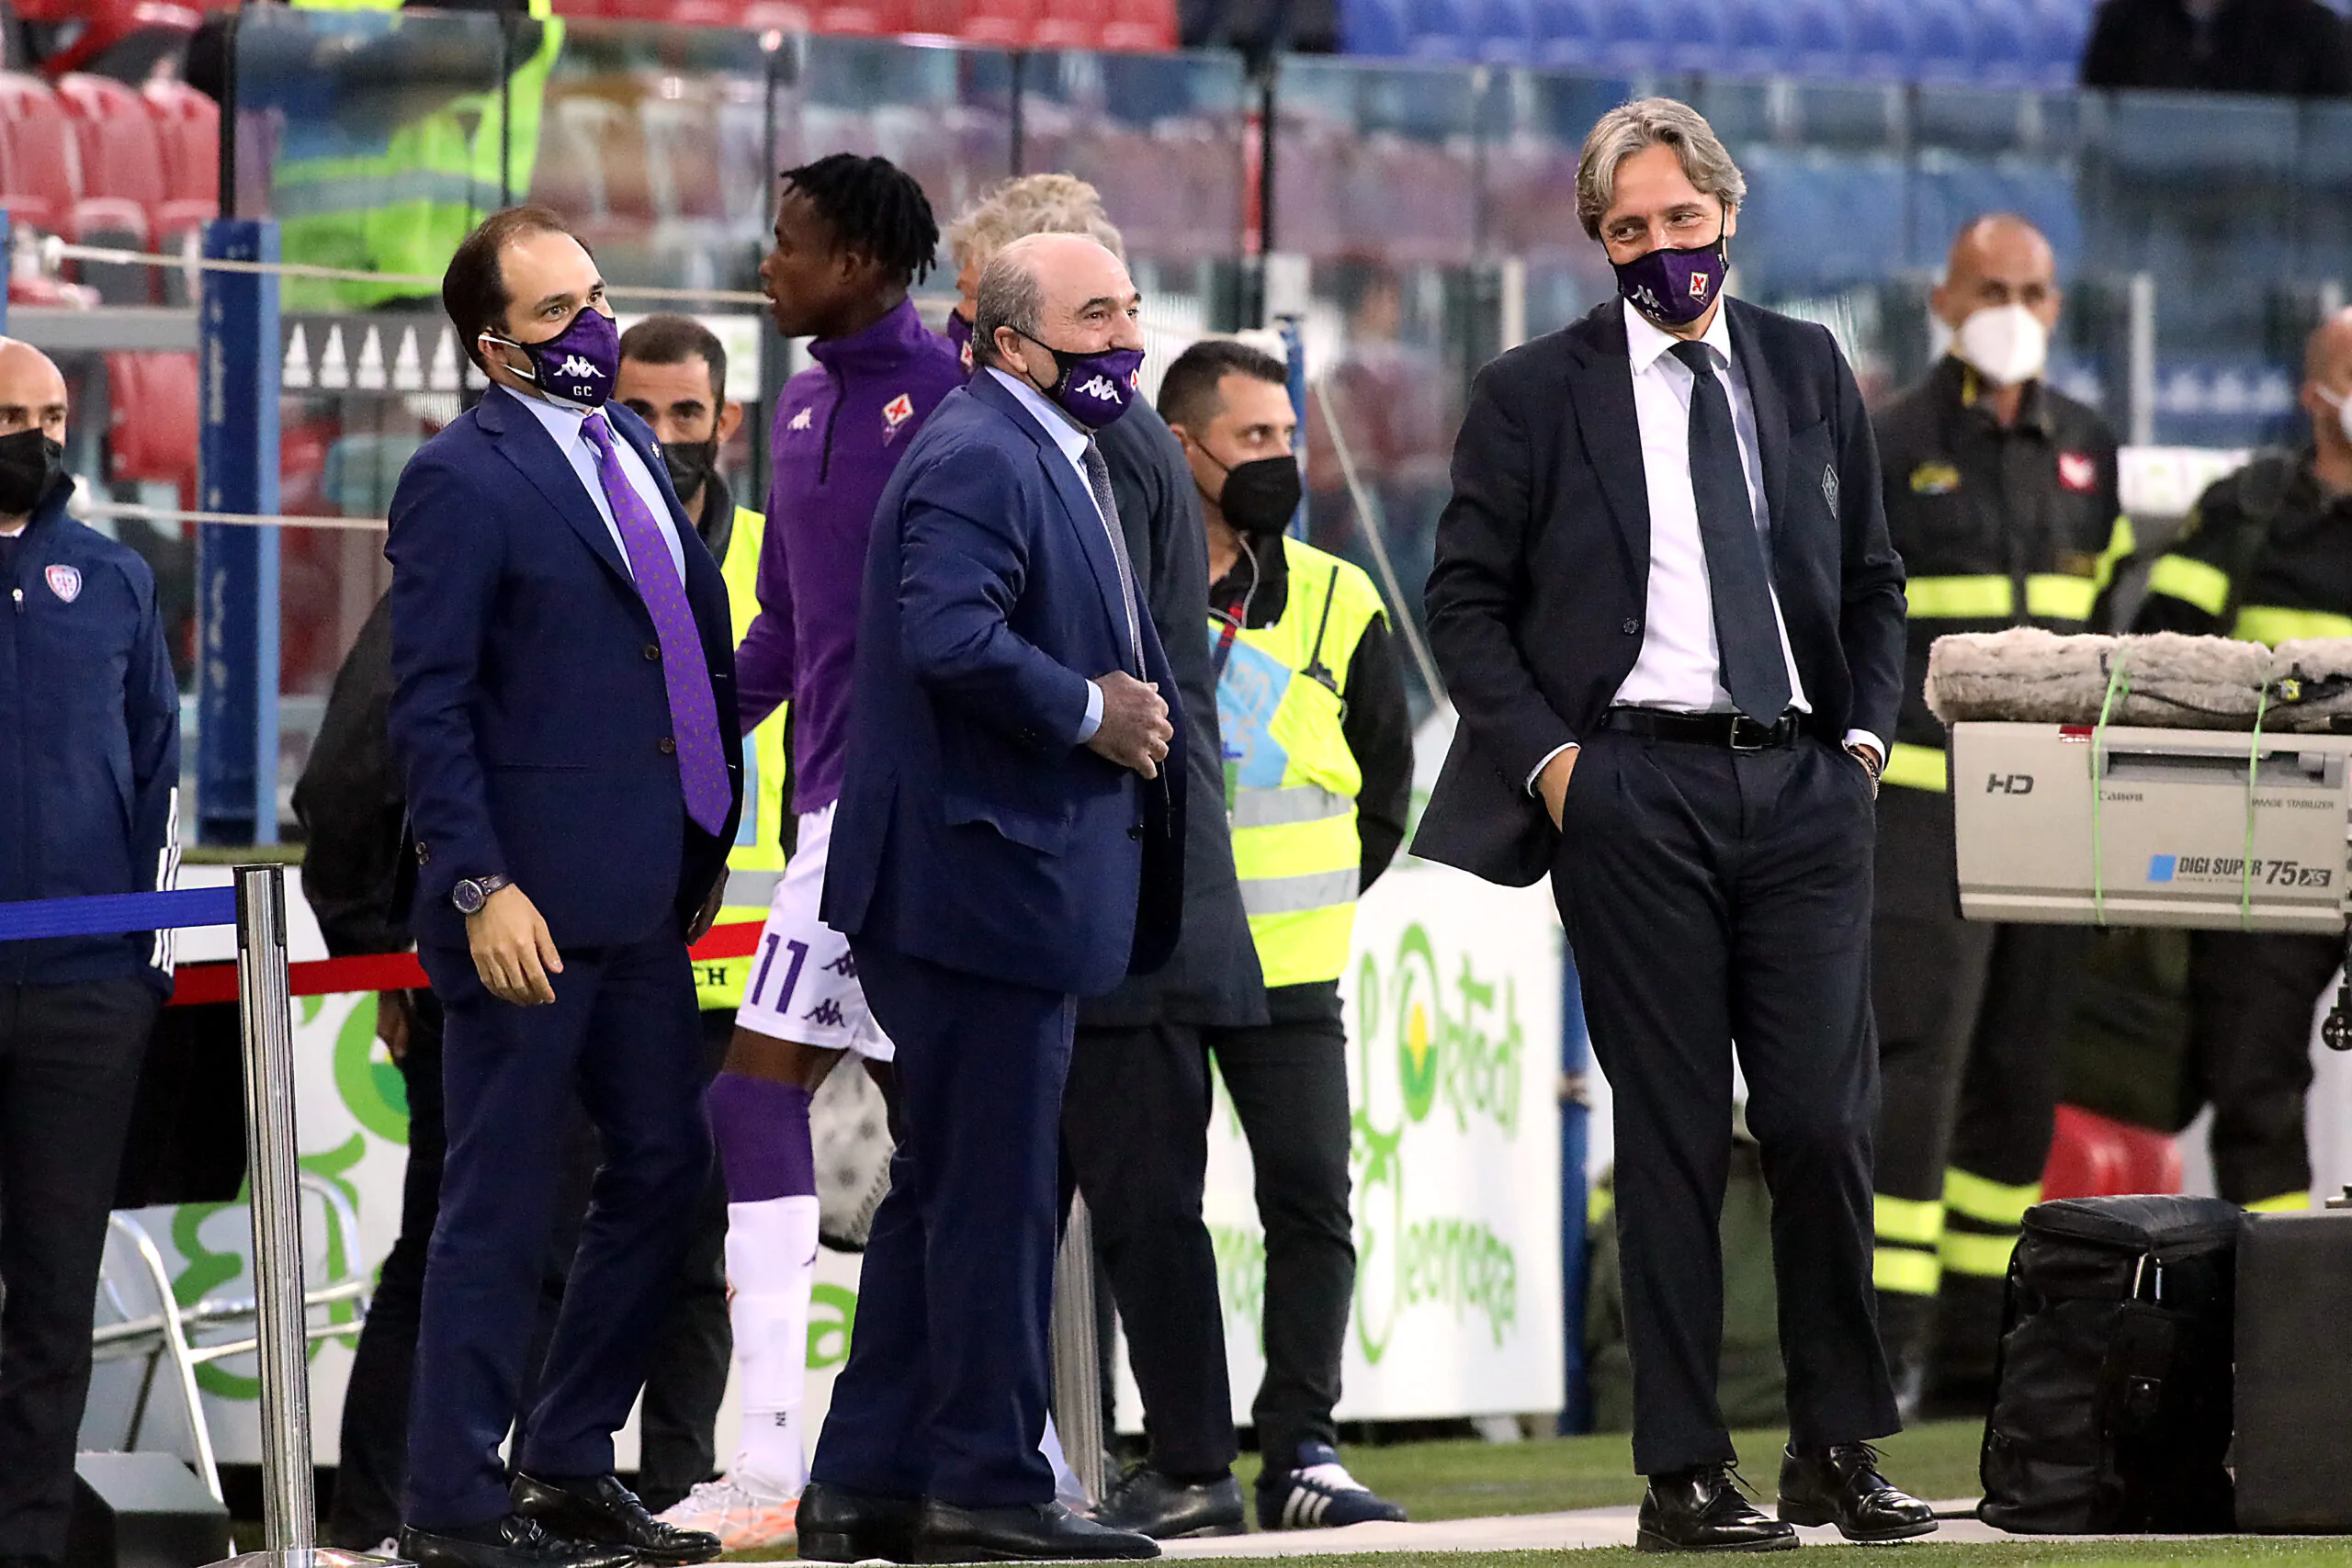 L’accusa della Fiorentina: “Procuratori disonesti e bugiardi, questione complicatissima”